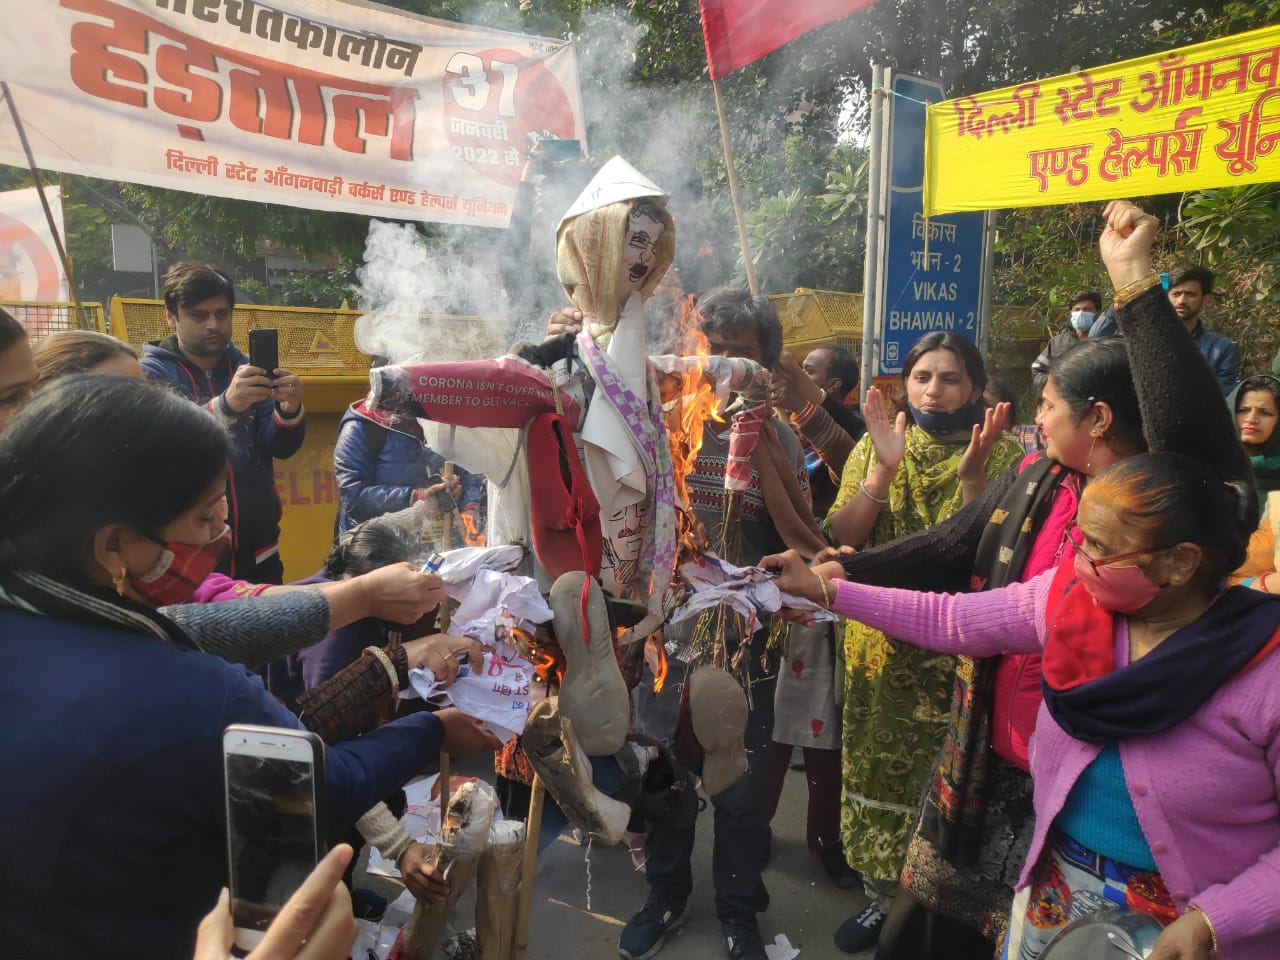 Anganwadi Agitation in Delhi - आंगनबाड़ी कार्यकर्ताओ ने केजरीवाल का पुतला फूंका,Kejriwal, Jan Media TV